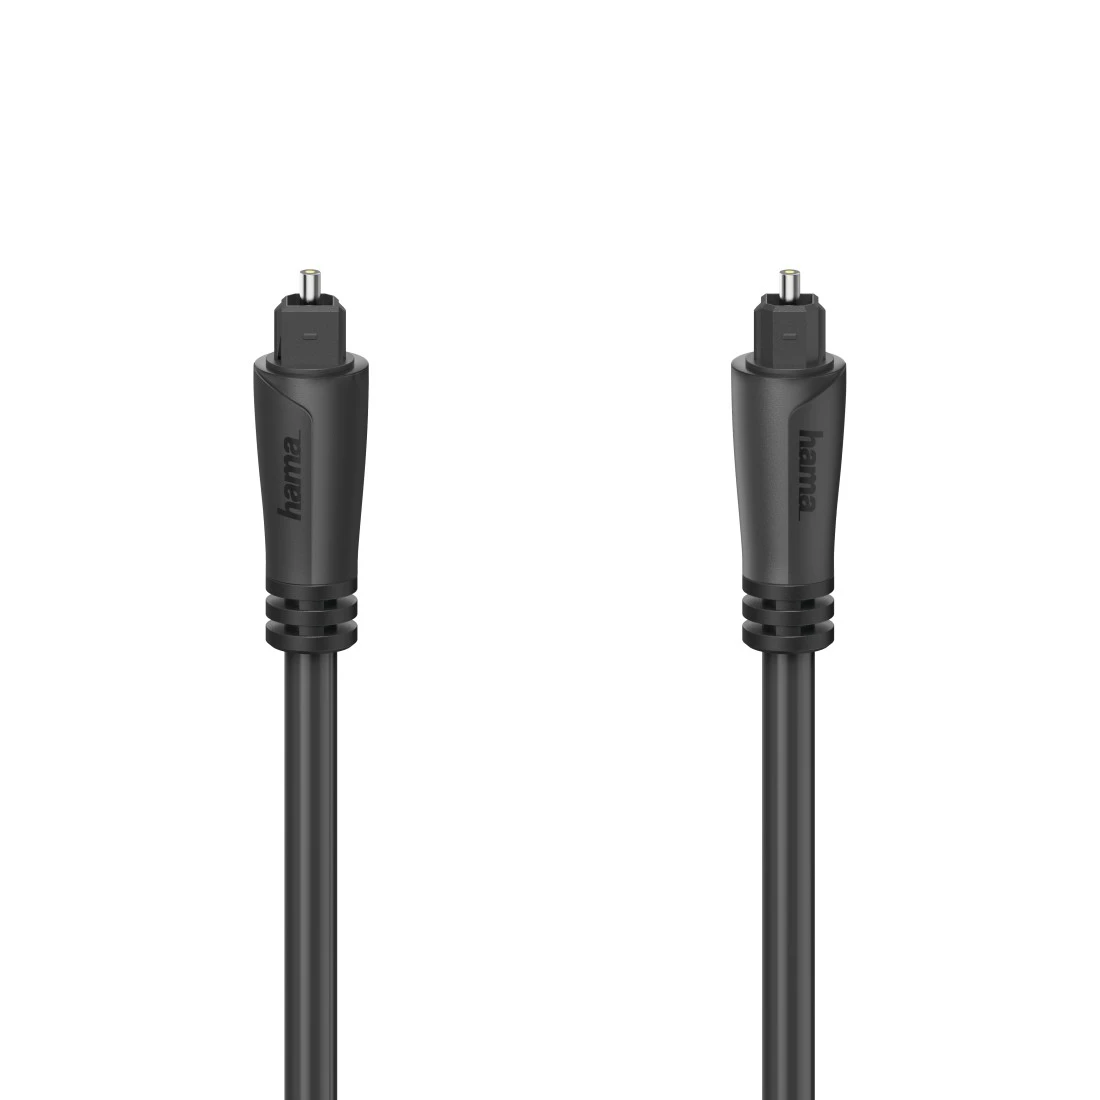 Cable de fibra óptica para audio, conector ODT macho (Toslink), 3,0 m | Hama